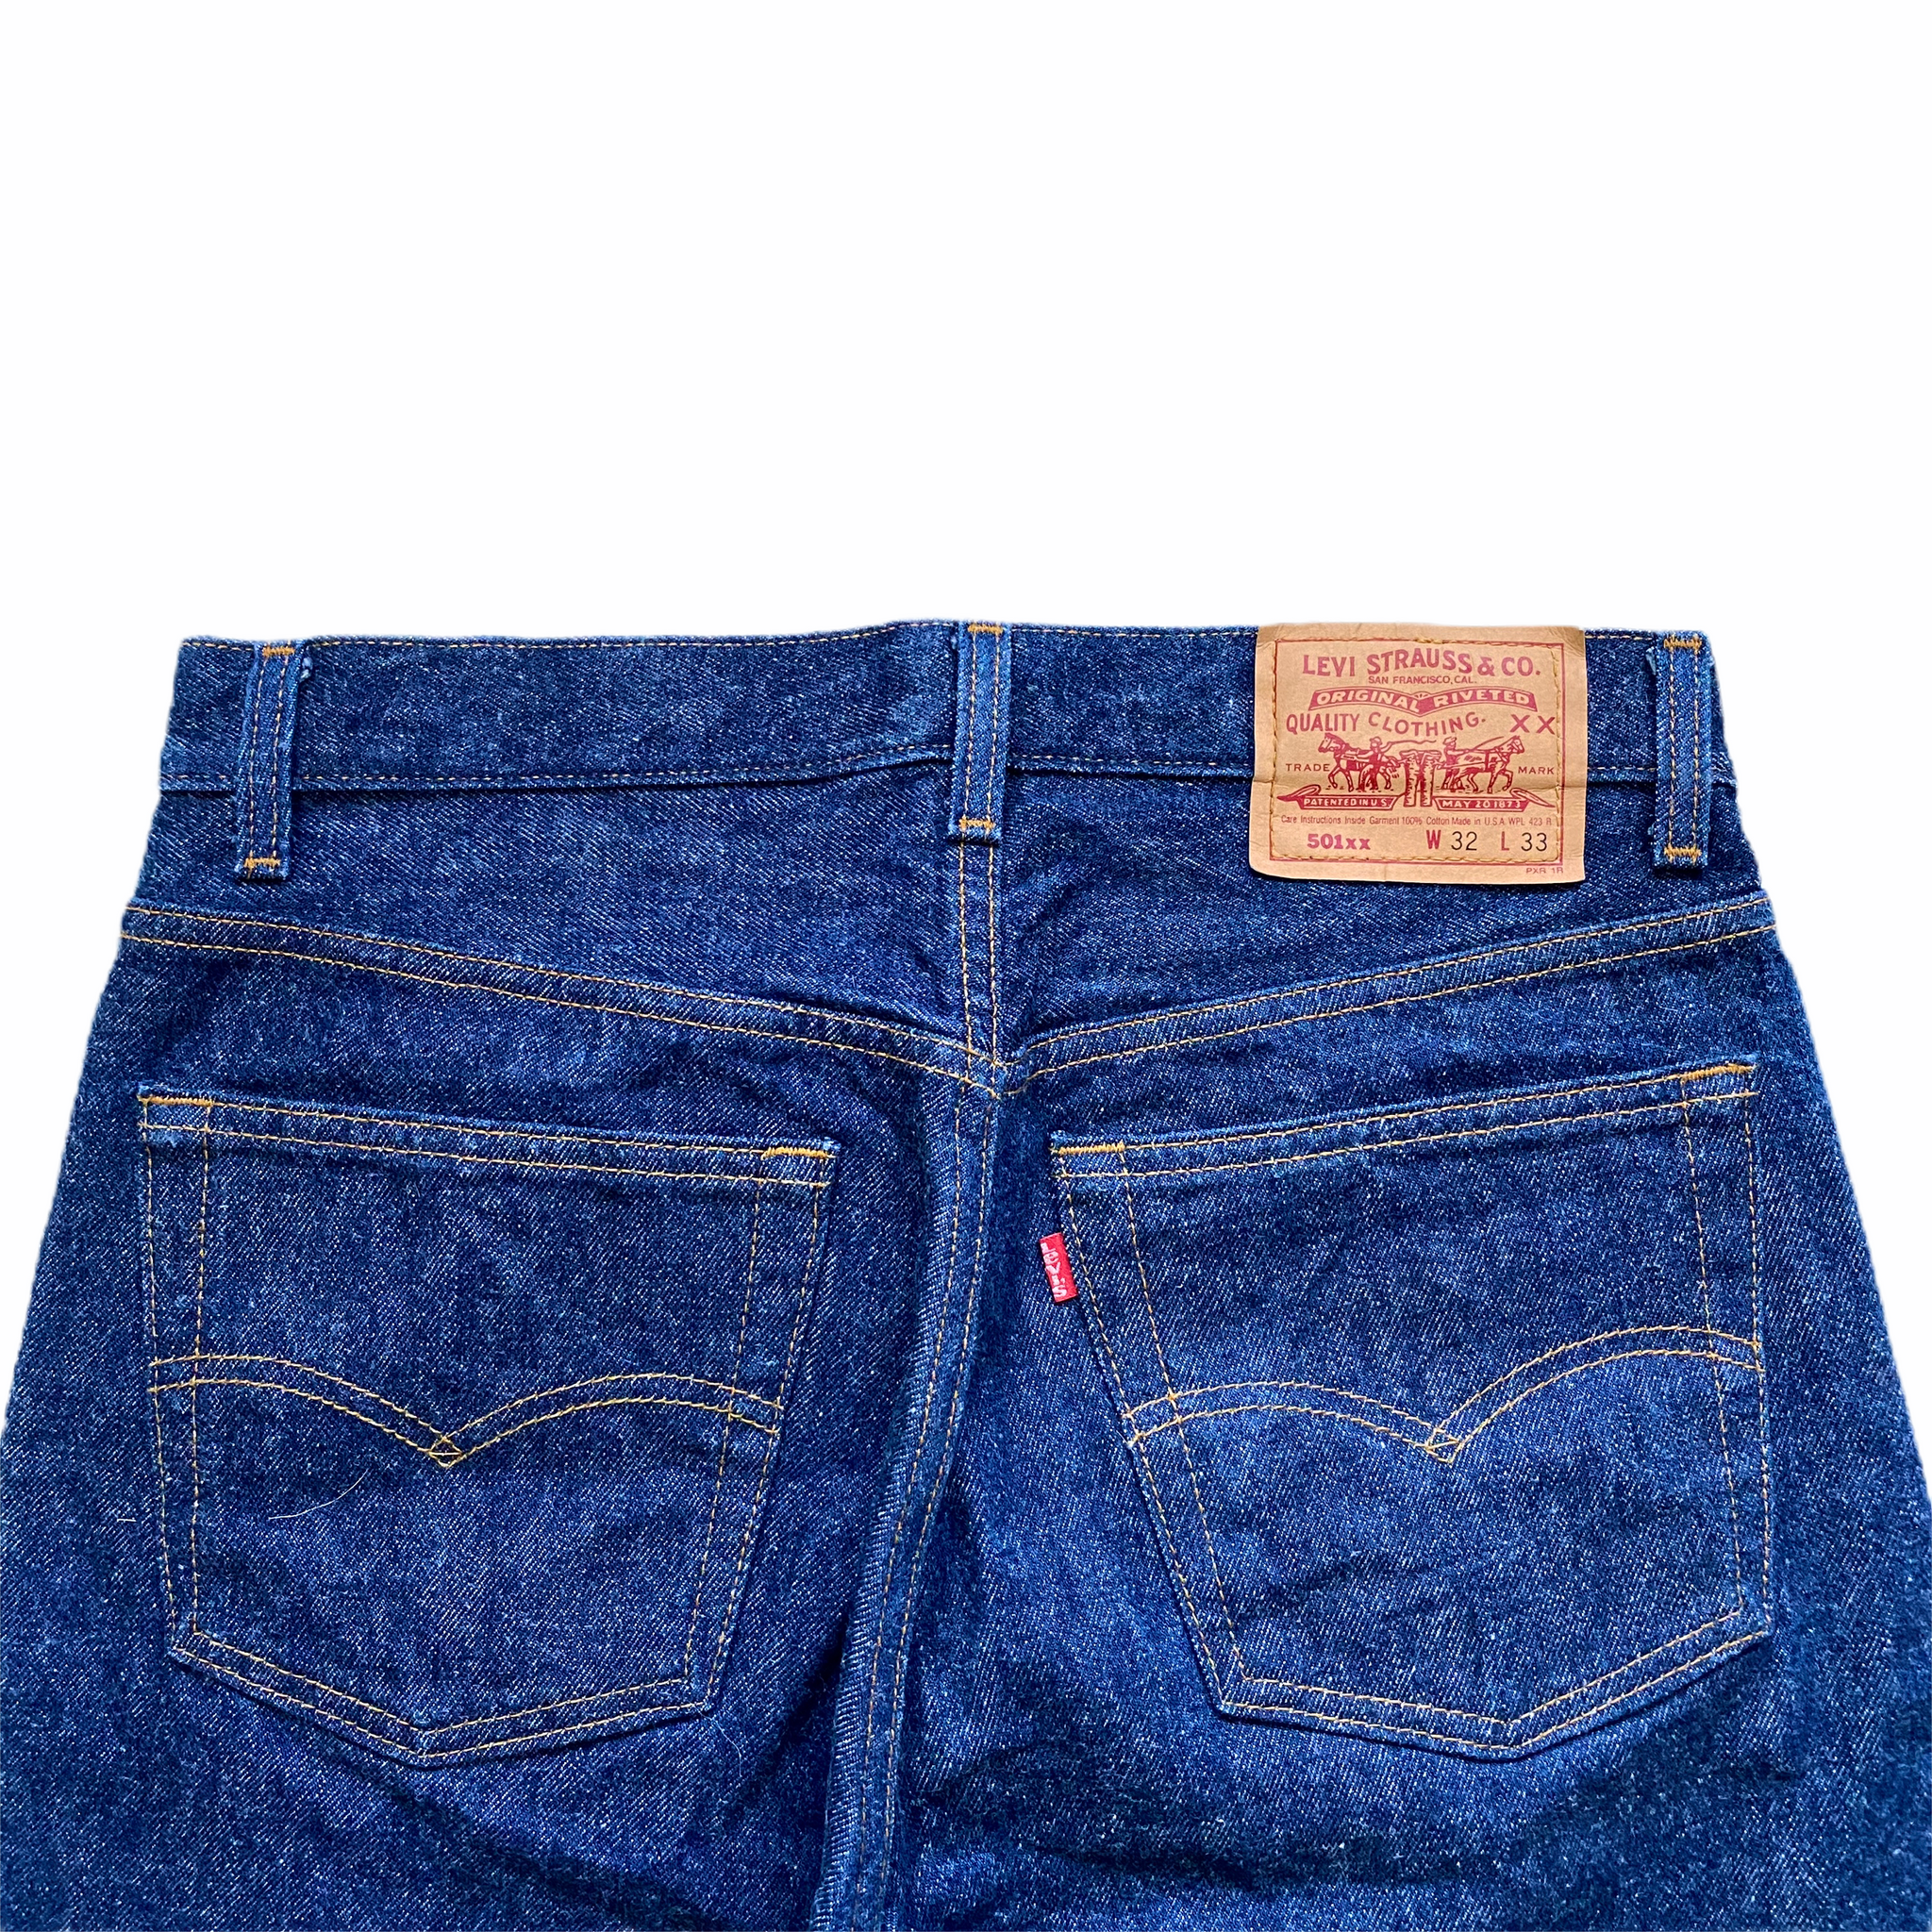 1980s Deadstock USA Levis 501XX Jeans Size 31x31 – ROCKHOPPER VINTAGE